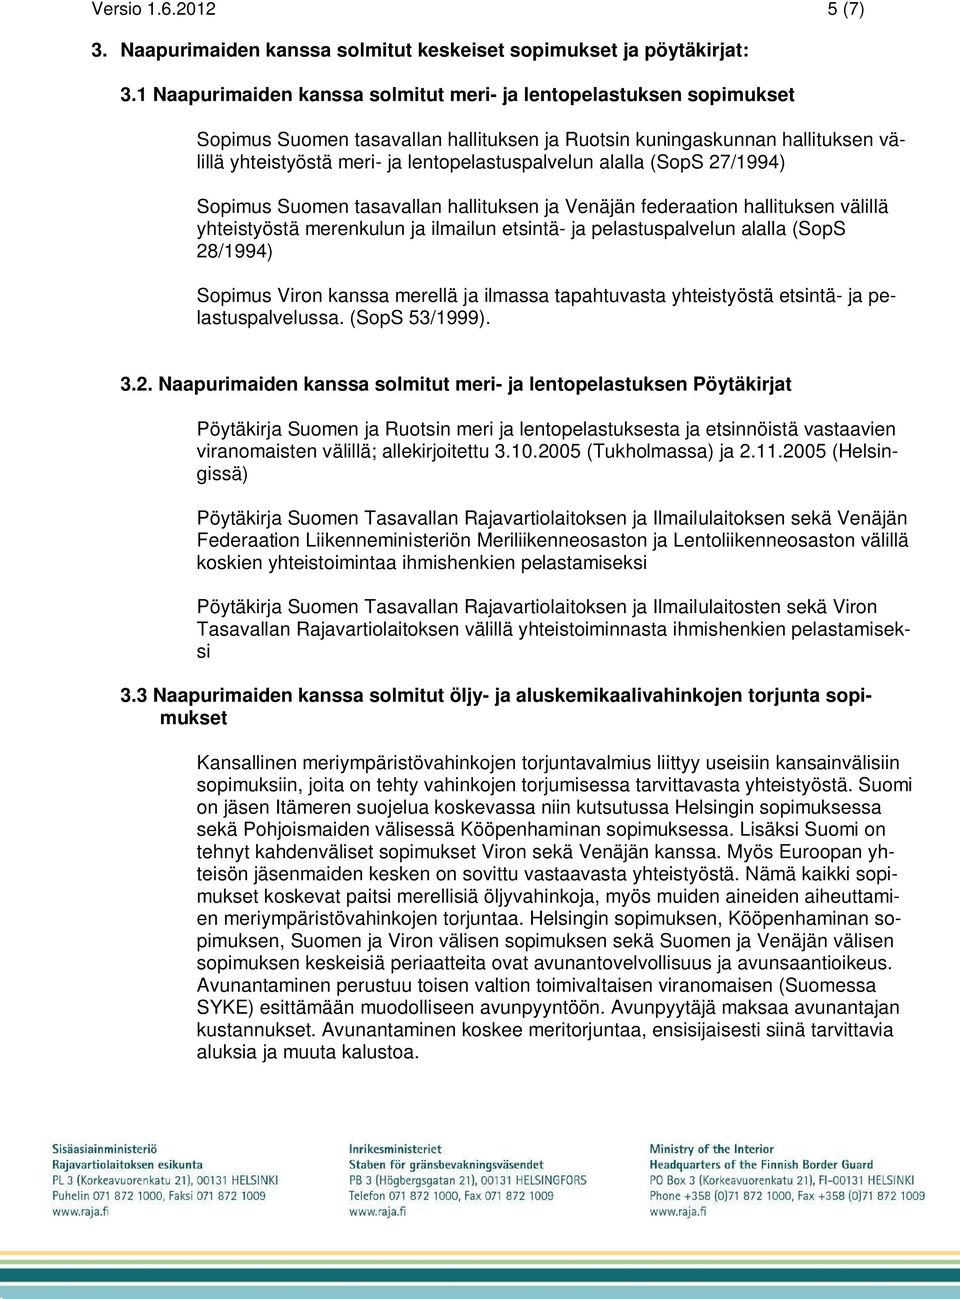 alalla (SopS 27/1994) Sopimus Suomen tasavallan hallituksen ja Venäjän federaation hallituksen välillä yhteistyöstä merenkulun ja ilmailun etsintä- ja pelastuspalvelun alalla (SopS 28/1994) Sopimus